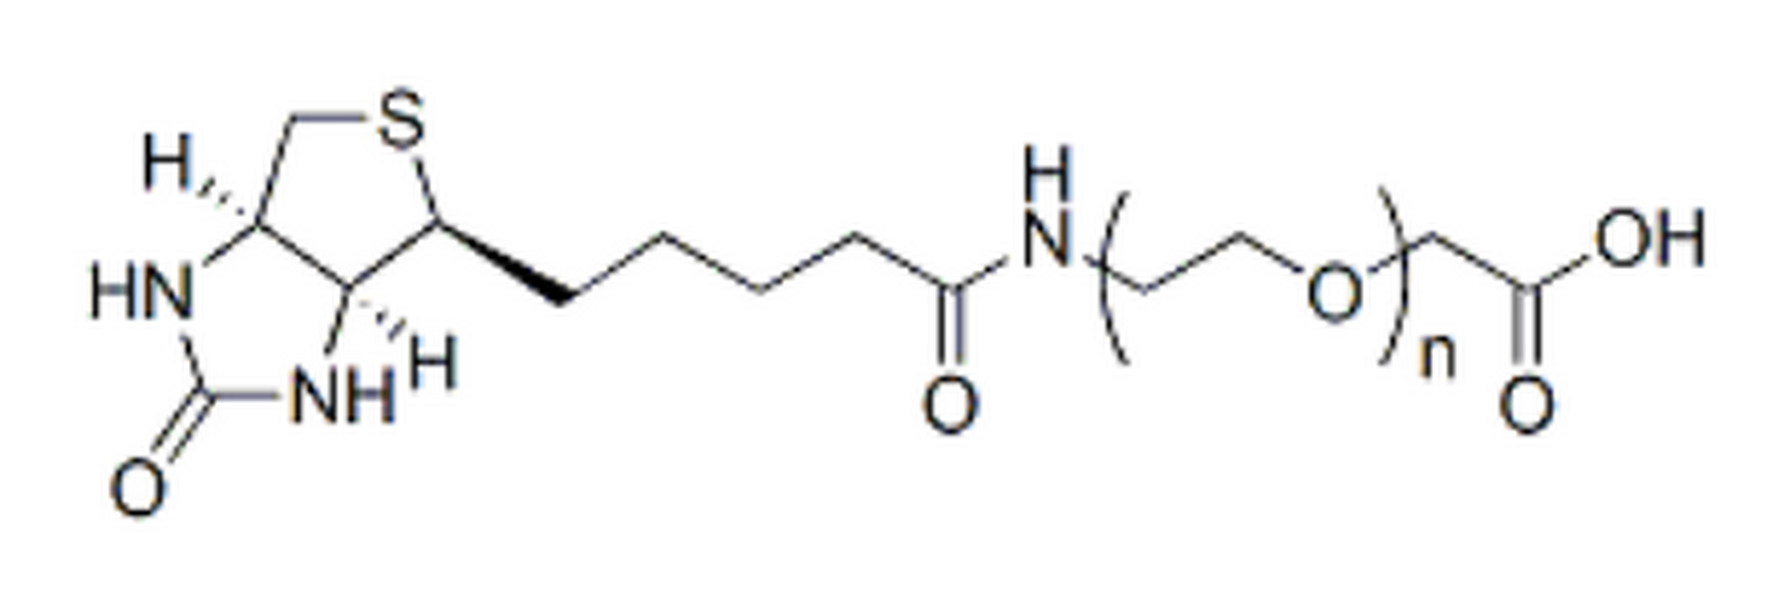 Biotin-PEG-CH2CO2H, MW 10K